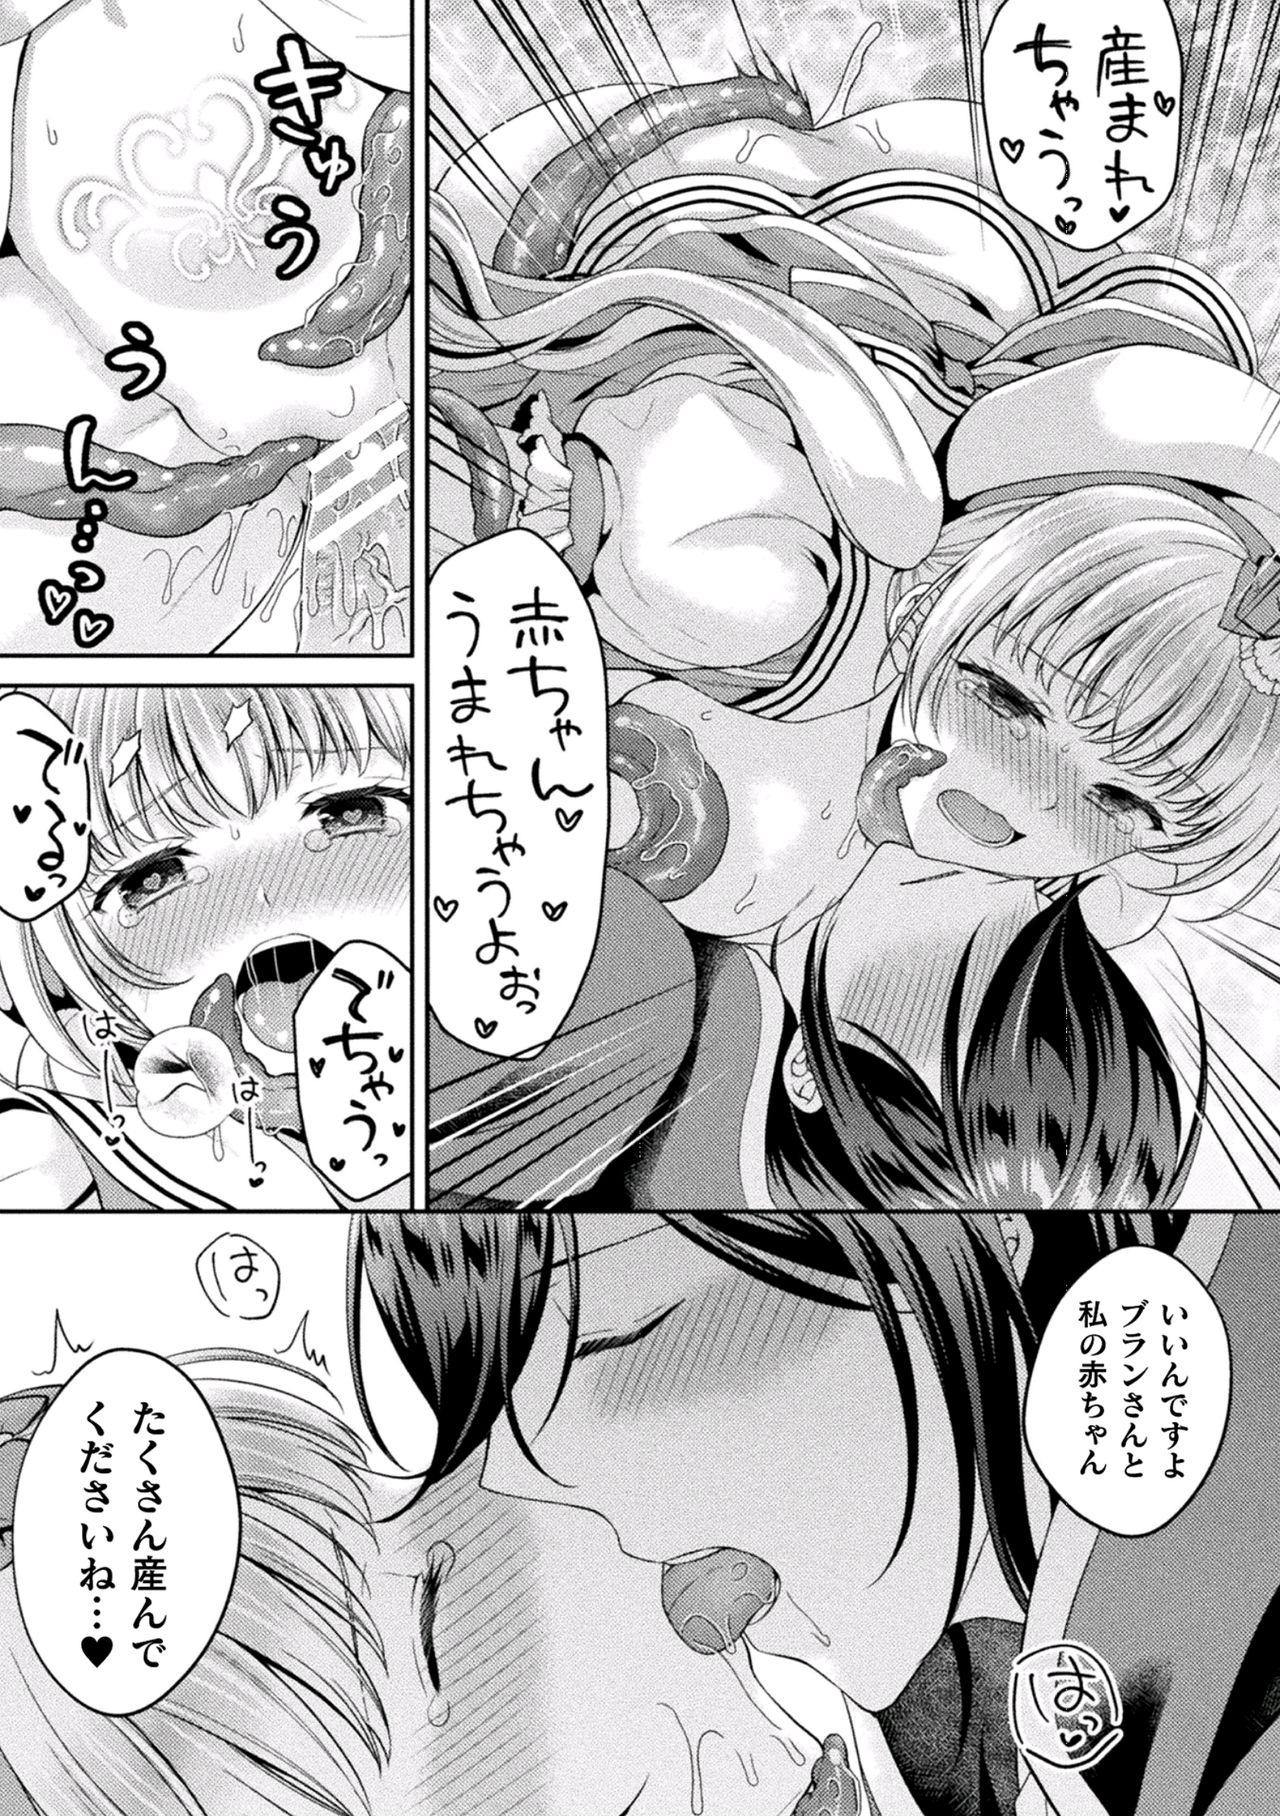 2D Comic Magazine Inmon wo Tsukerareta Bishoujo-tachi ga Sanran Akume Ochi! Vol. 1 59